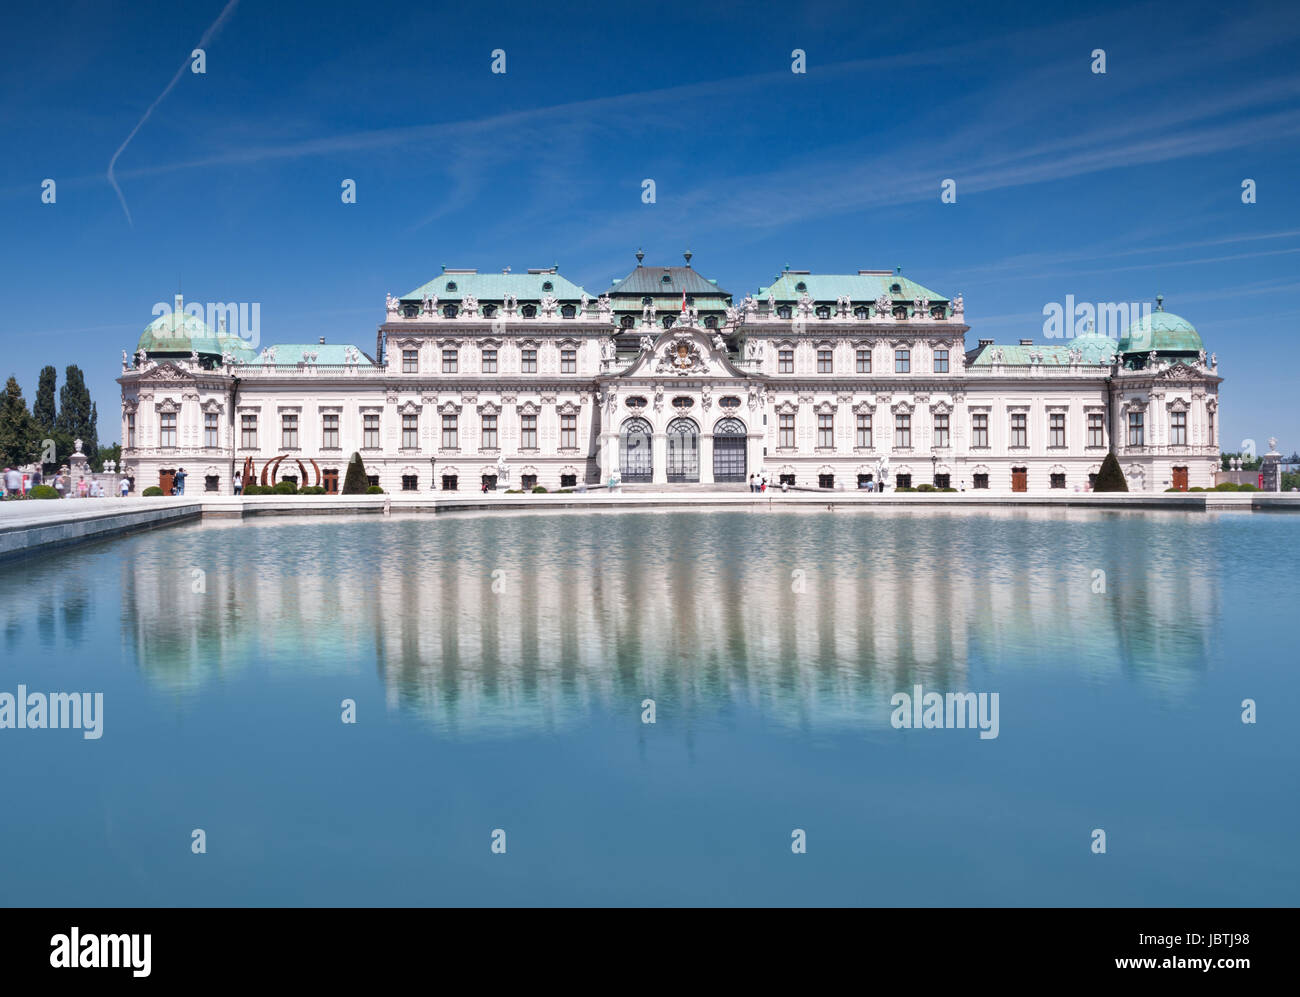 El castillo de Belvedere en Viena, Austria. Foto de stock